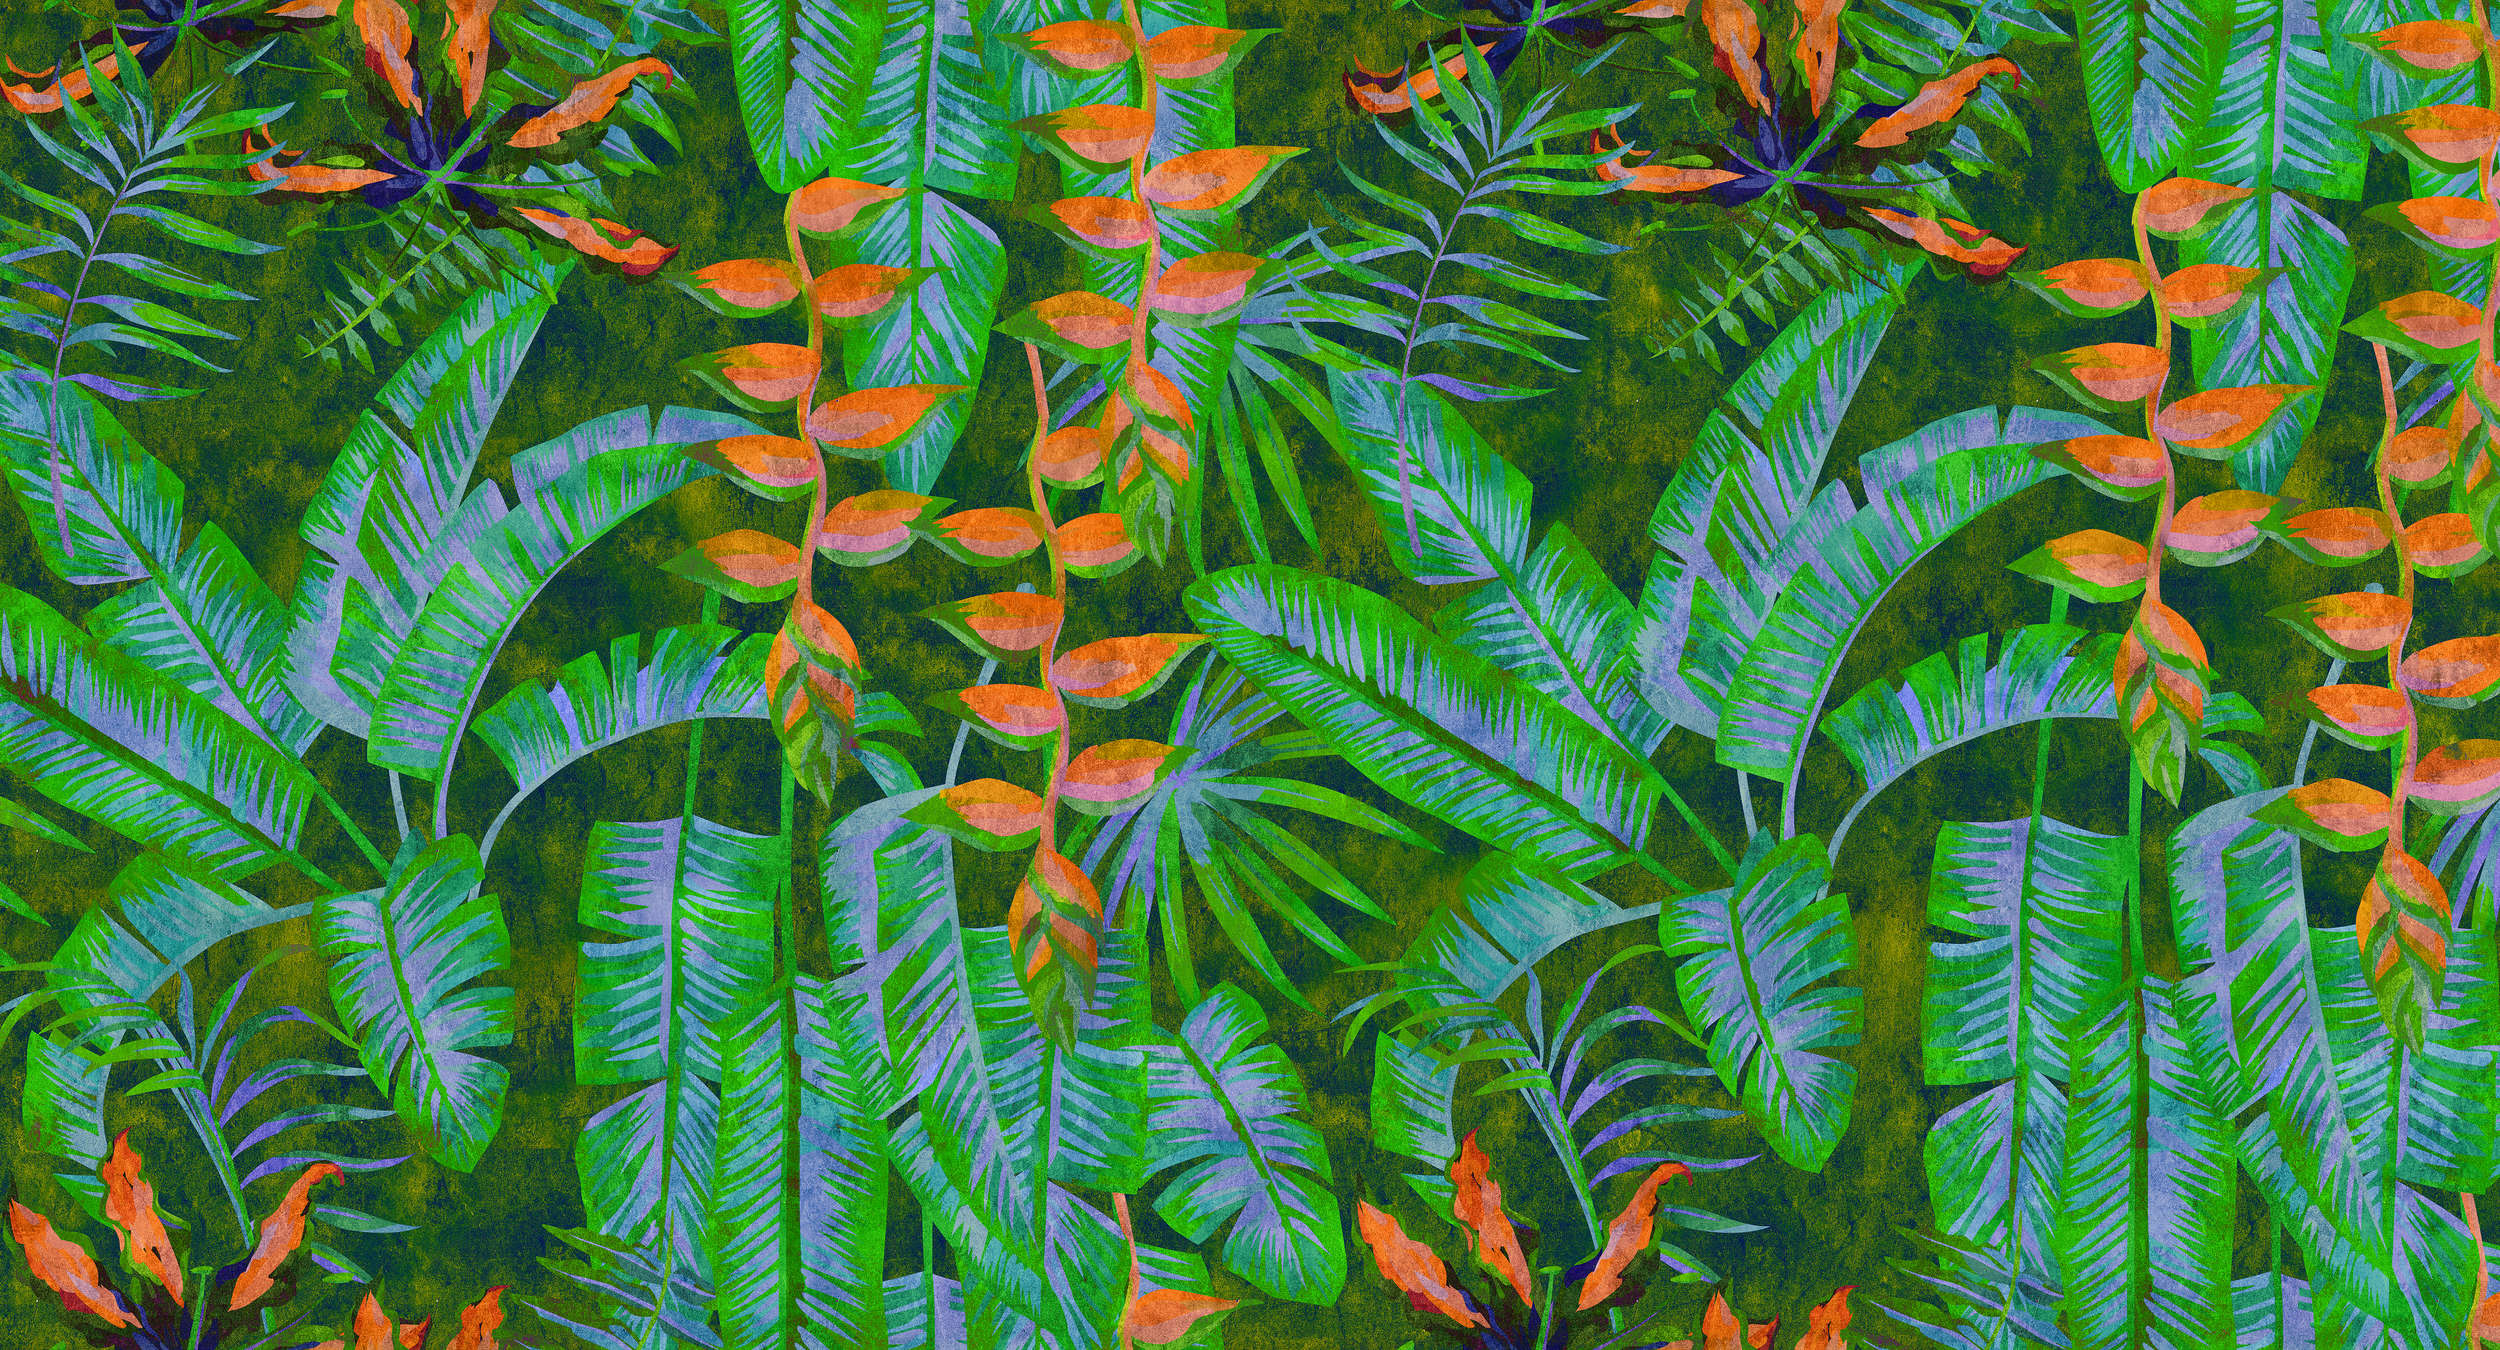             Tropicana 4 - Dschungel Fototapete mit knalligen Farben- Löschpapier Struktur – Grün, Orange | Struktur Vlies
        